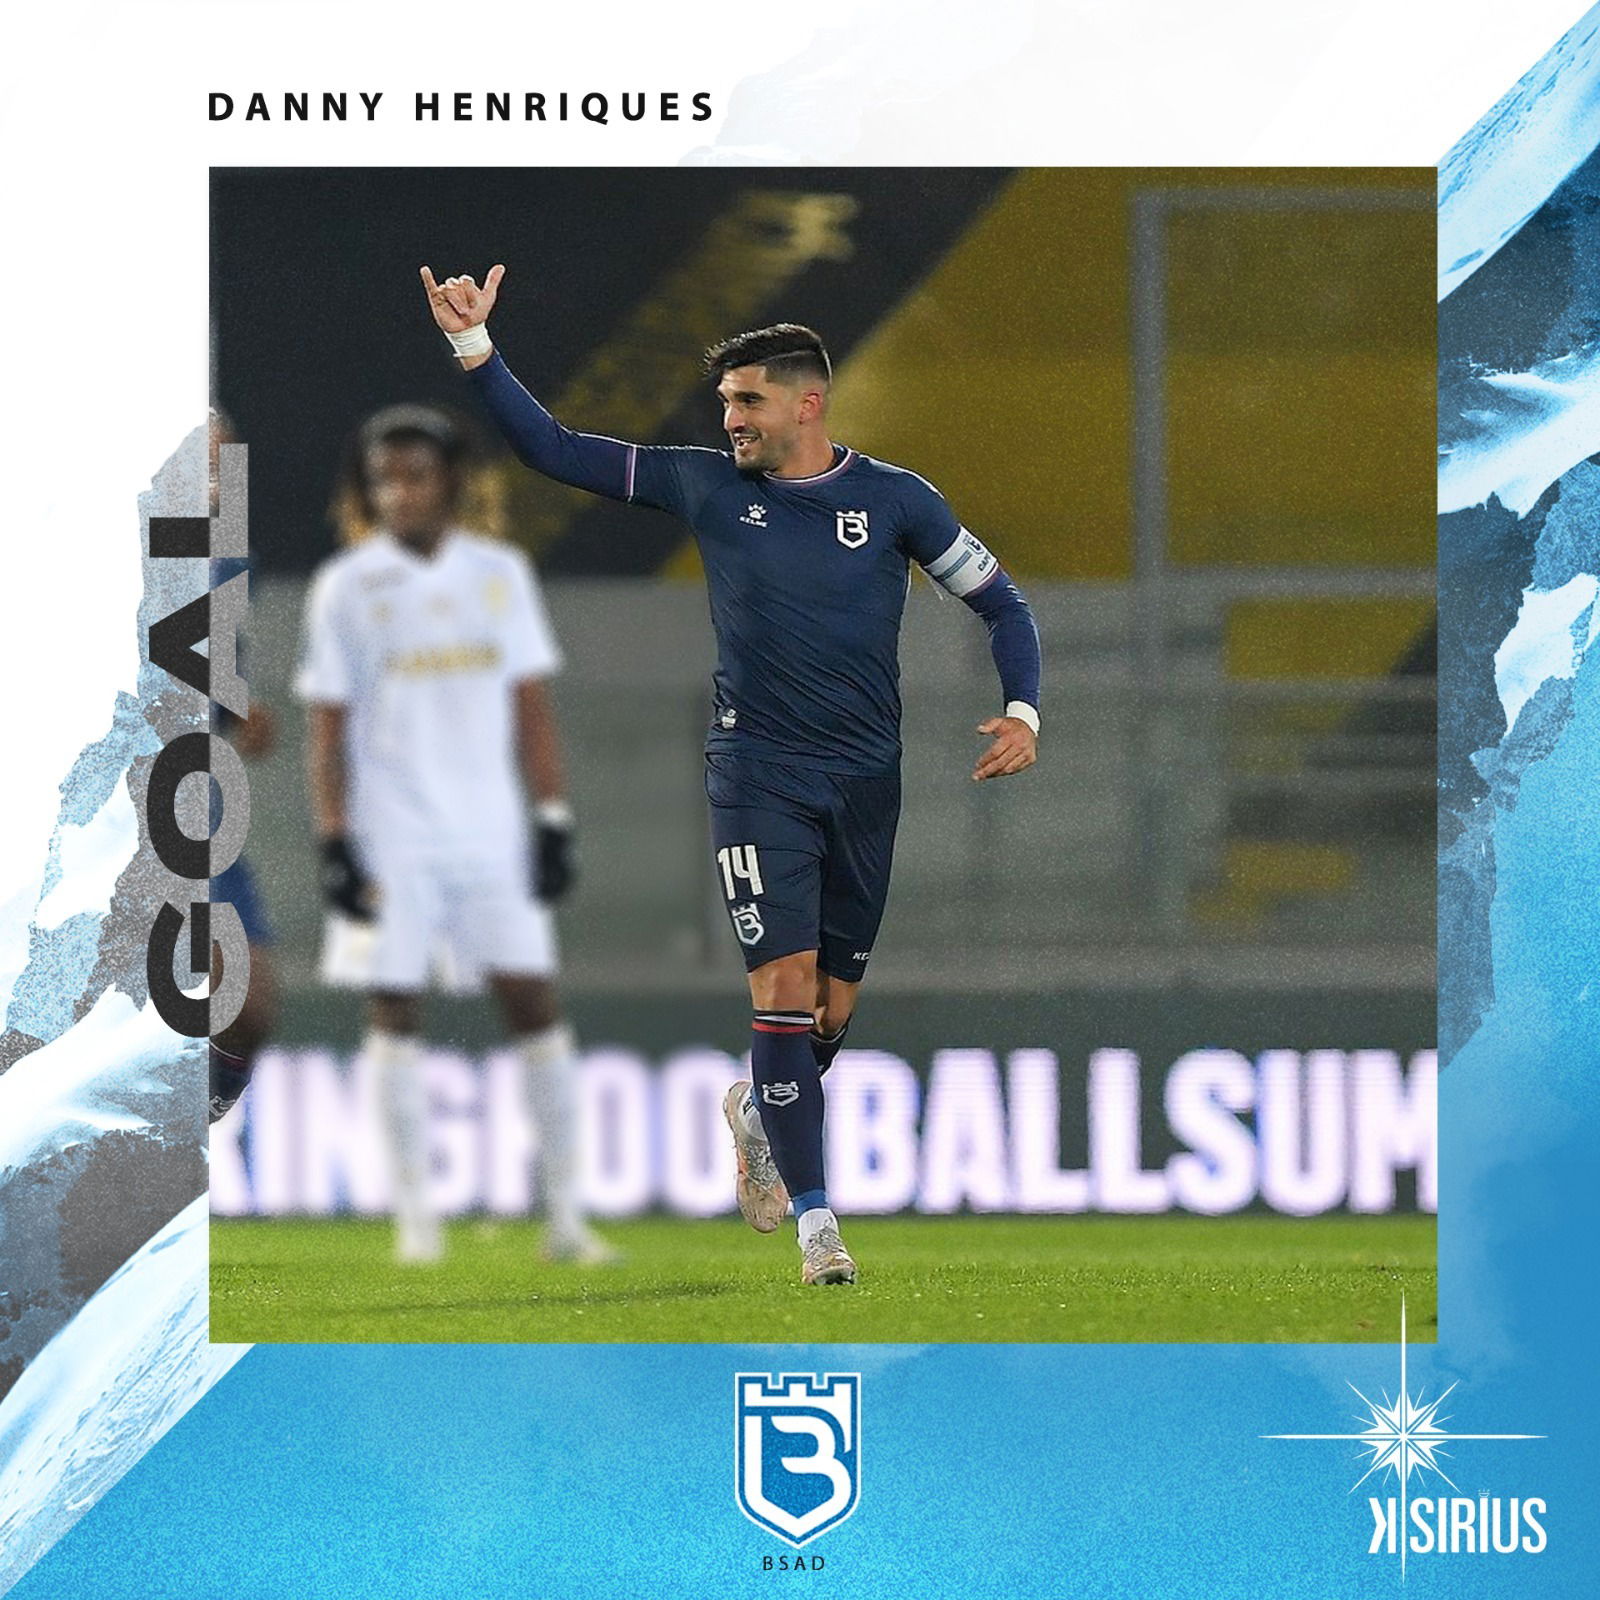 Goal: Danny Henriques (B-SAD)